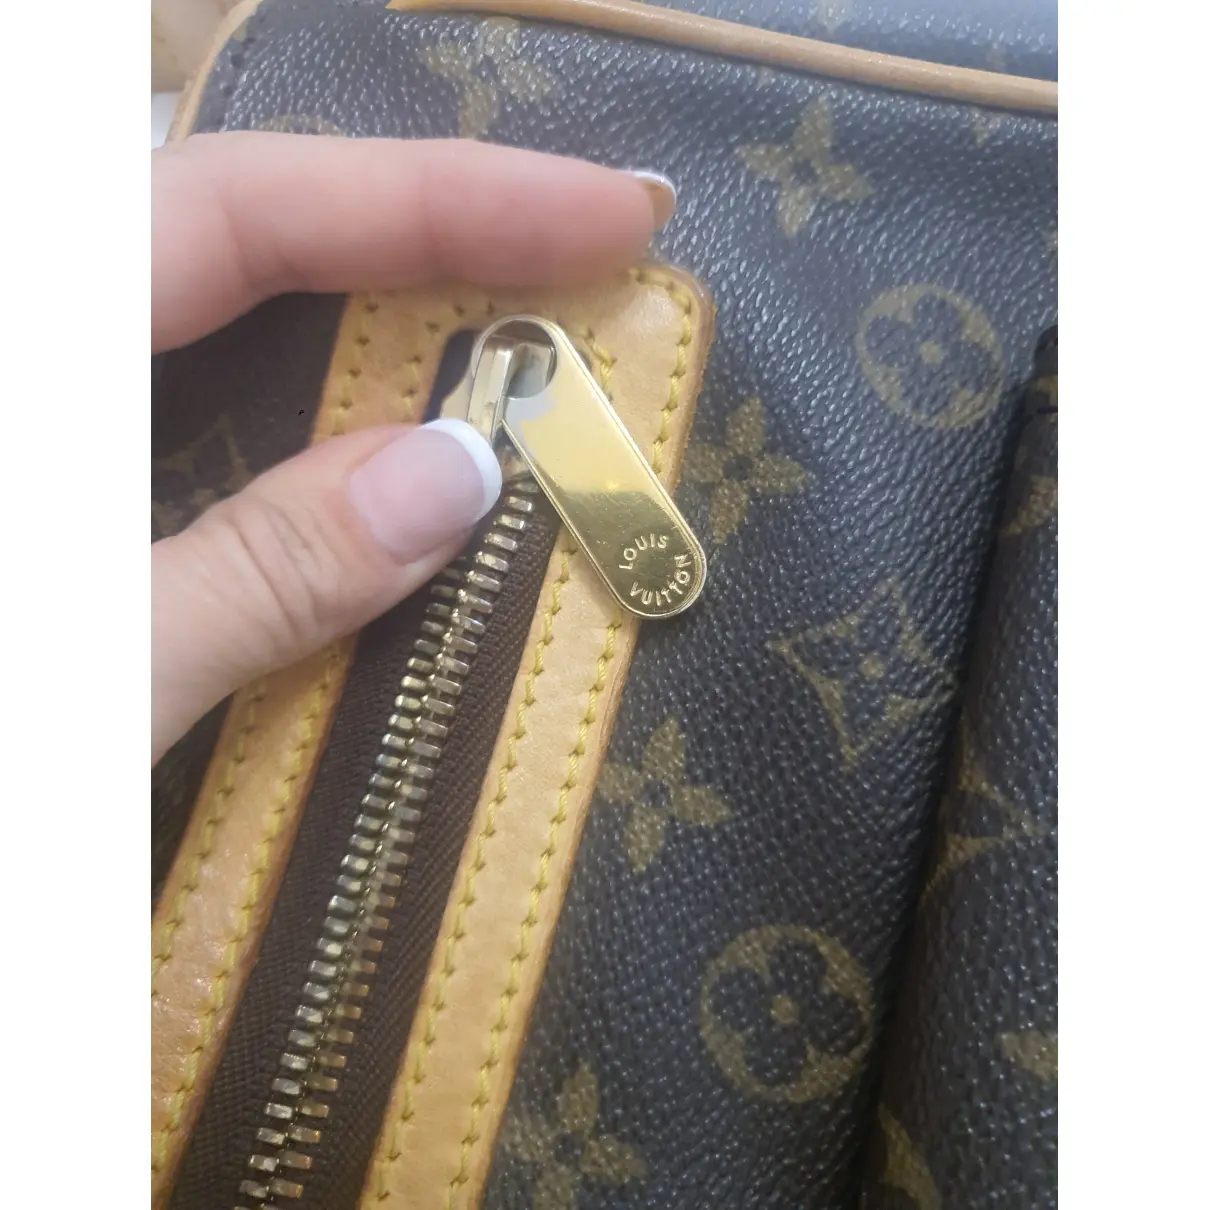 Hudson cloth handbag Louis Vuitton